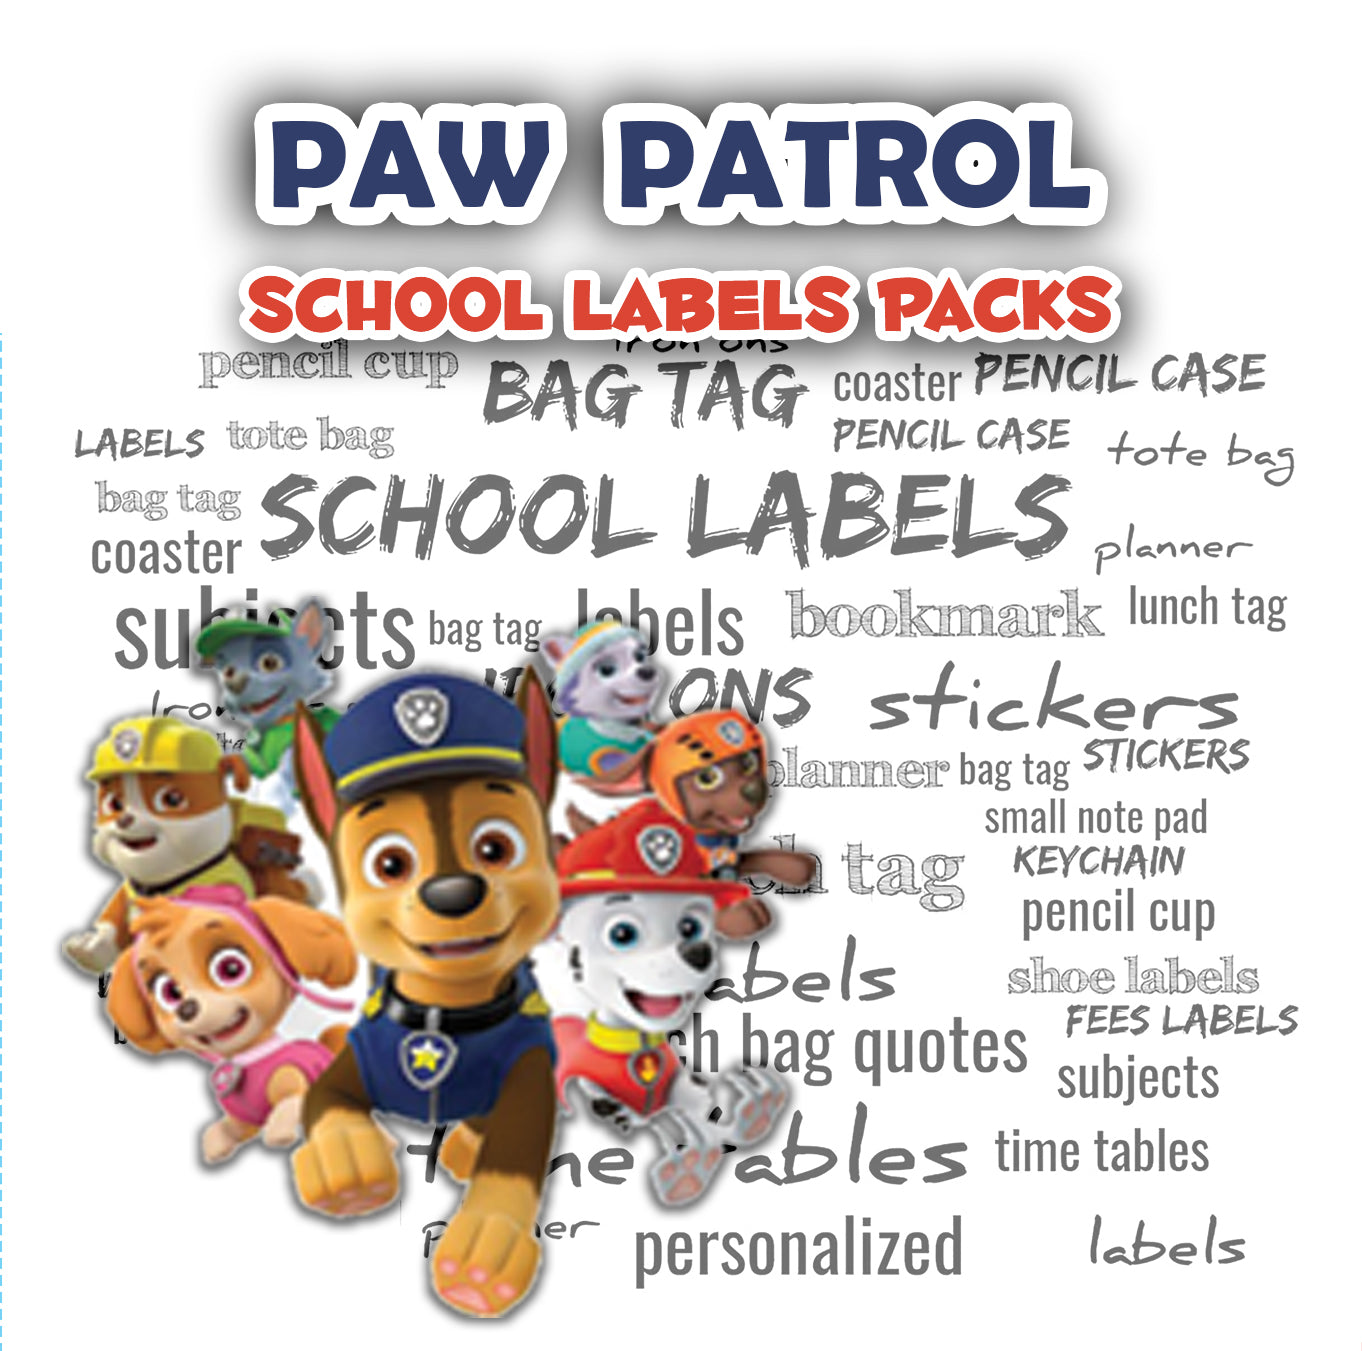 ""Paw Patrol" School labels packs